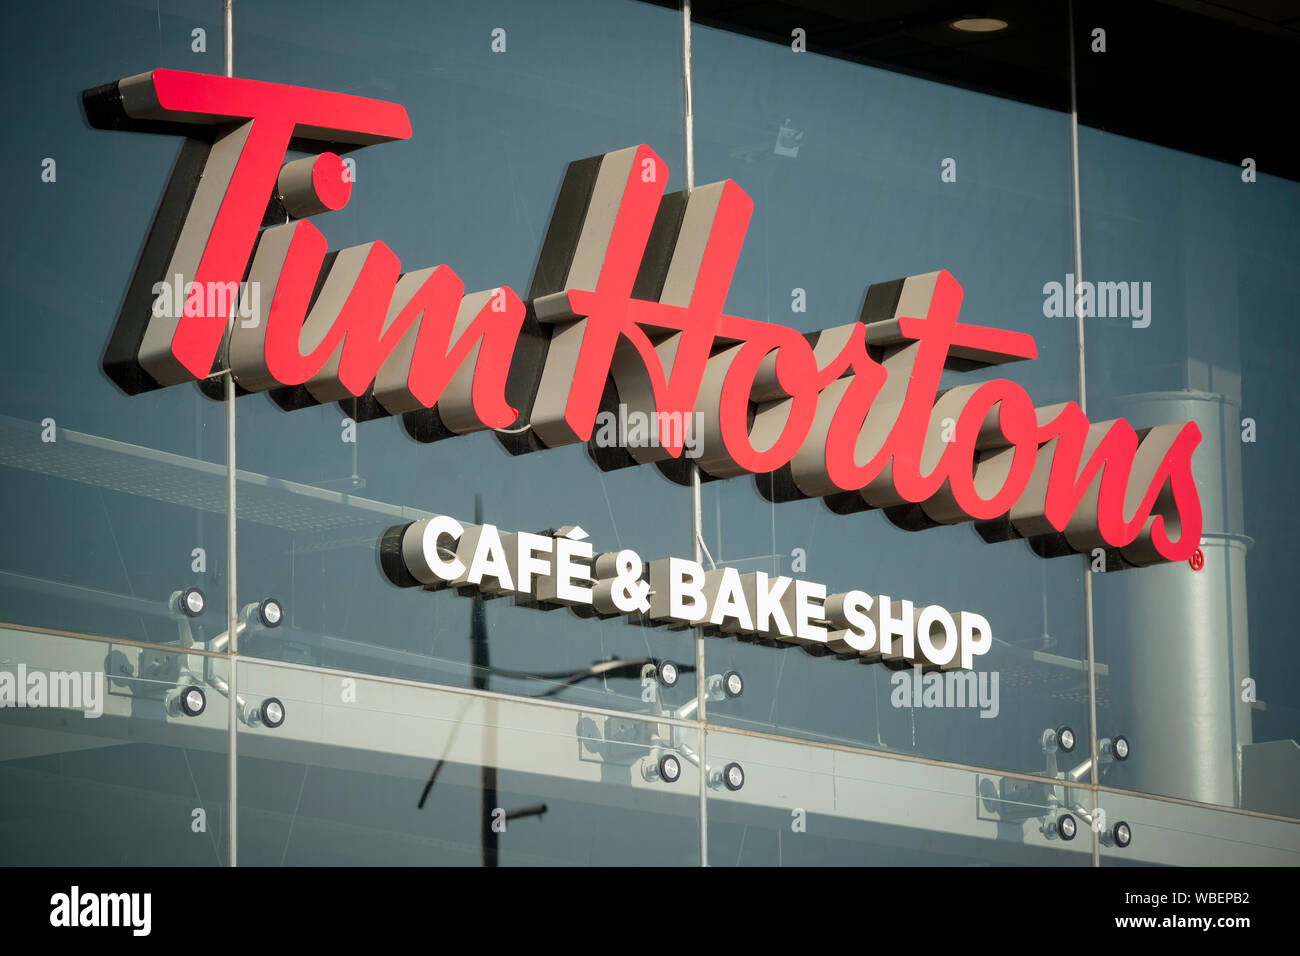 Une signalisation indiquant la direction de drive-in le café Tim Hortons et Bake shop situé sur Bury New Road à Manchester, au Royaume-Uni. Banque D'Images